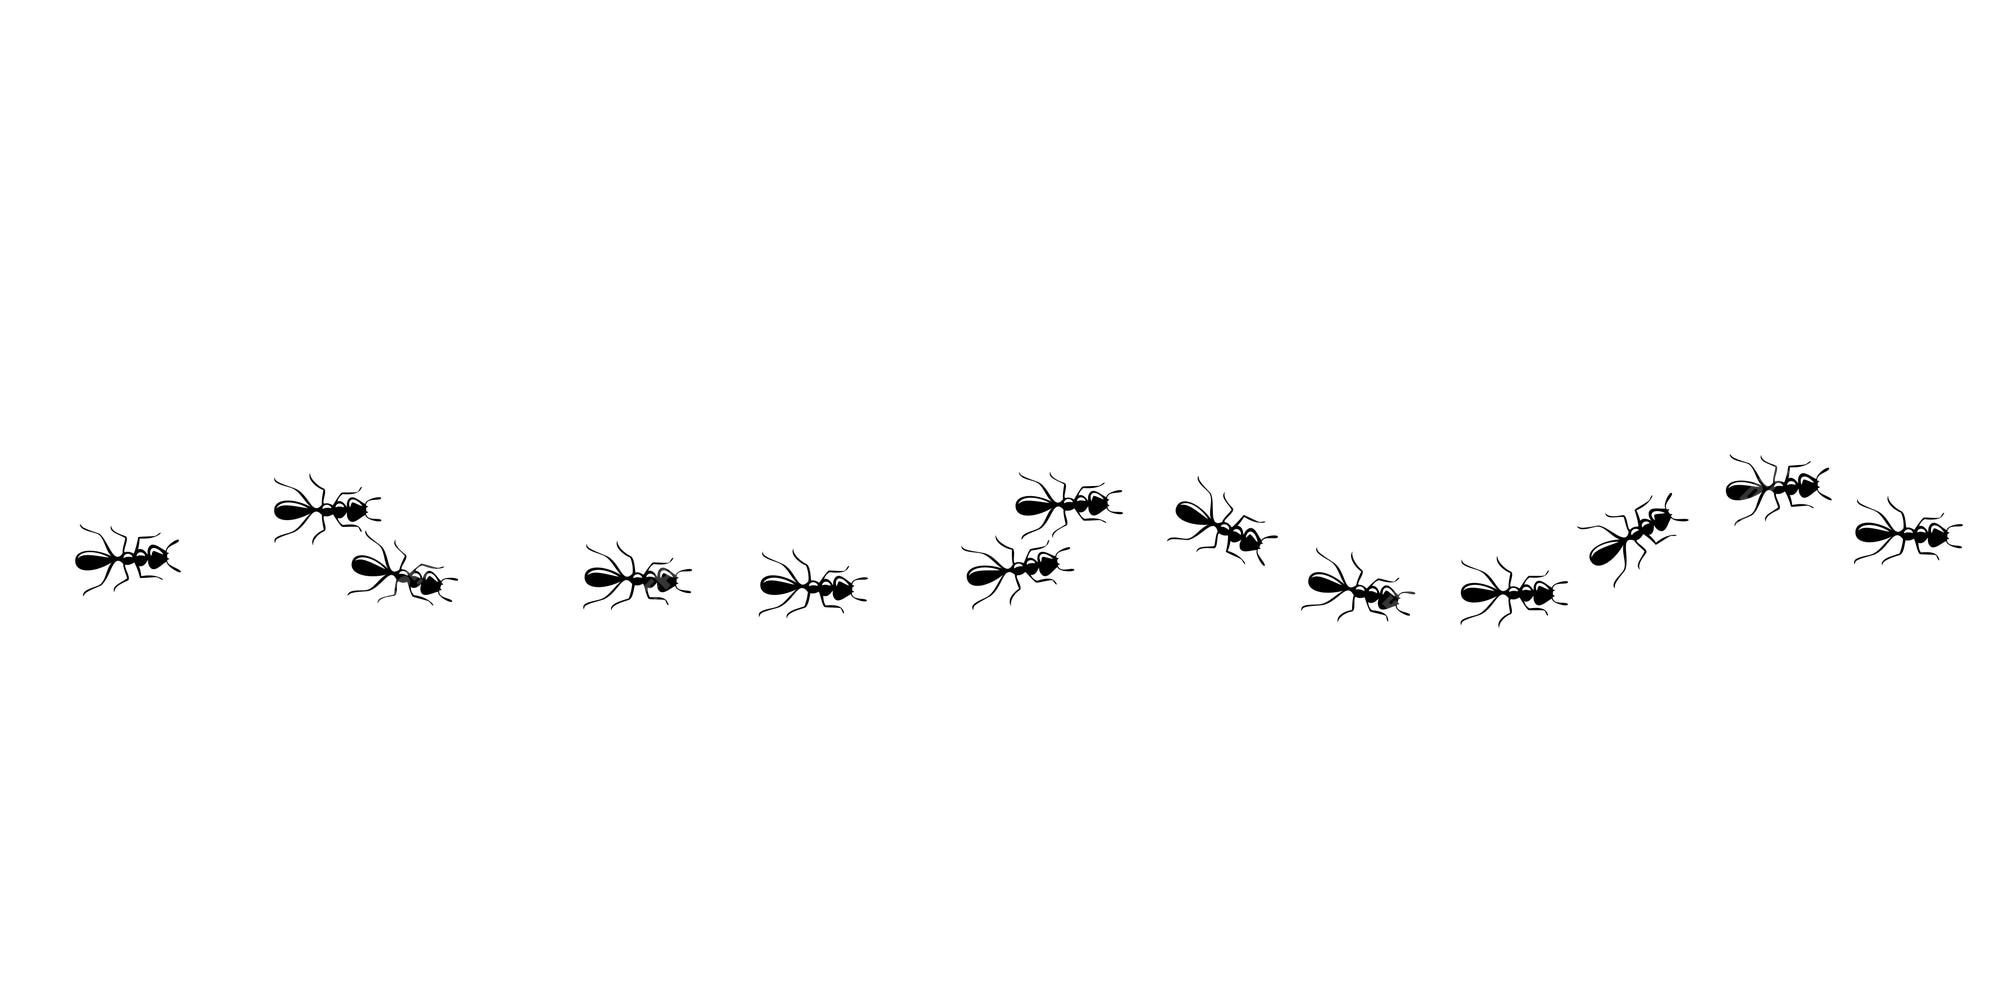 Padrão Sem Emenda De Trilha De Formigas Caminho De Formiga Isolado No Fundo Branco Ilustração 9052